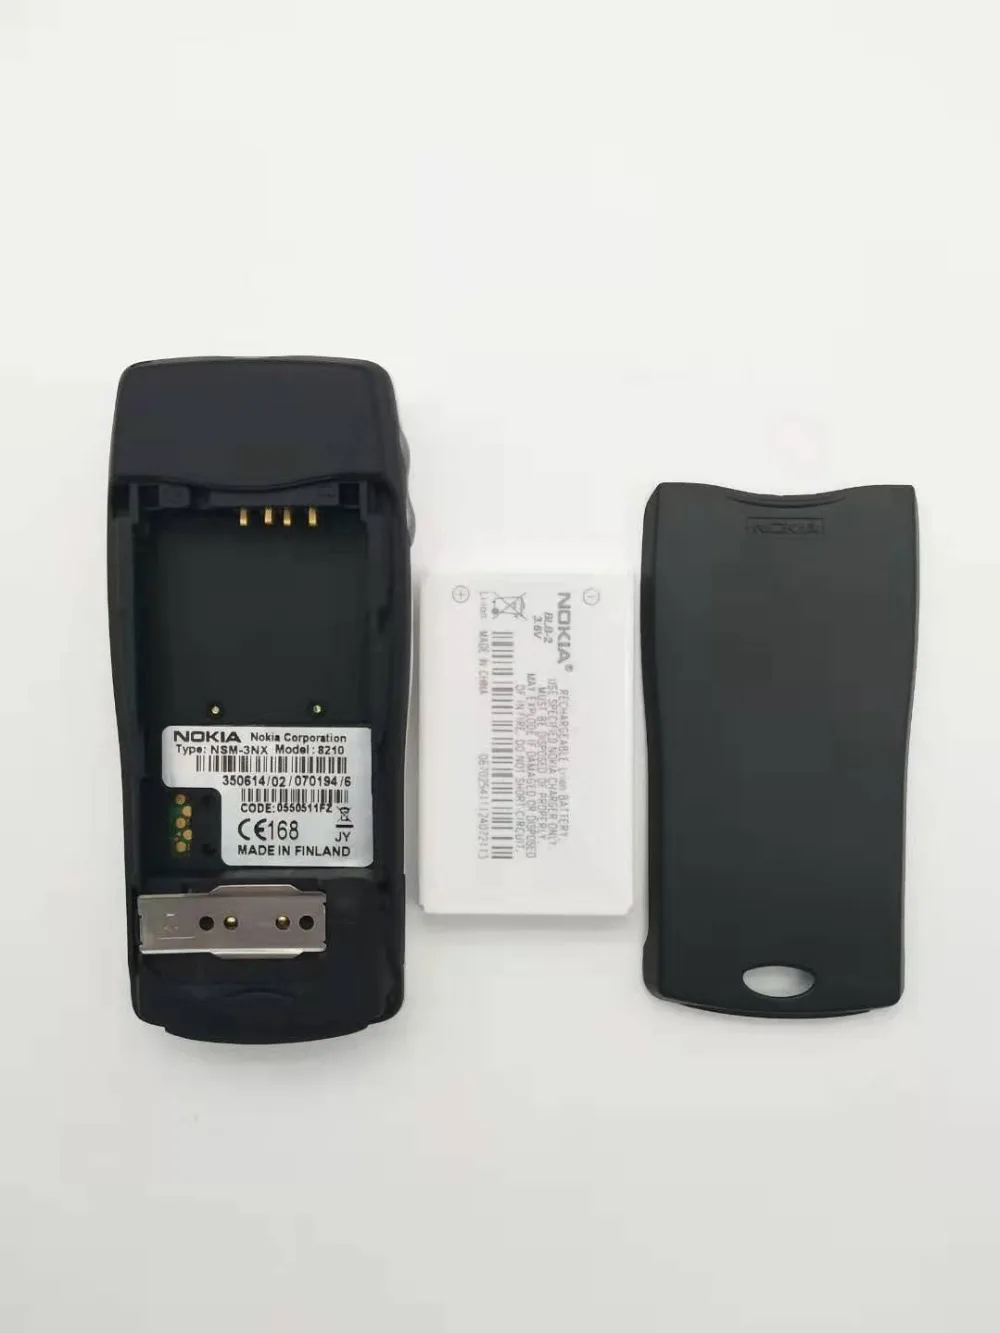 2 шт./лот 100% Оригинал Nokia 8210 разблокирована мобильный телефон г Dualband GSM 900/1800 GPRS Классический дешевый мобильный телефон Бесплатная доставка